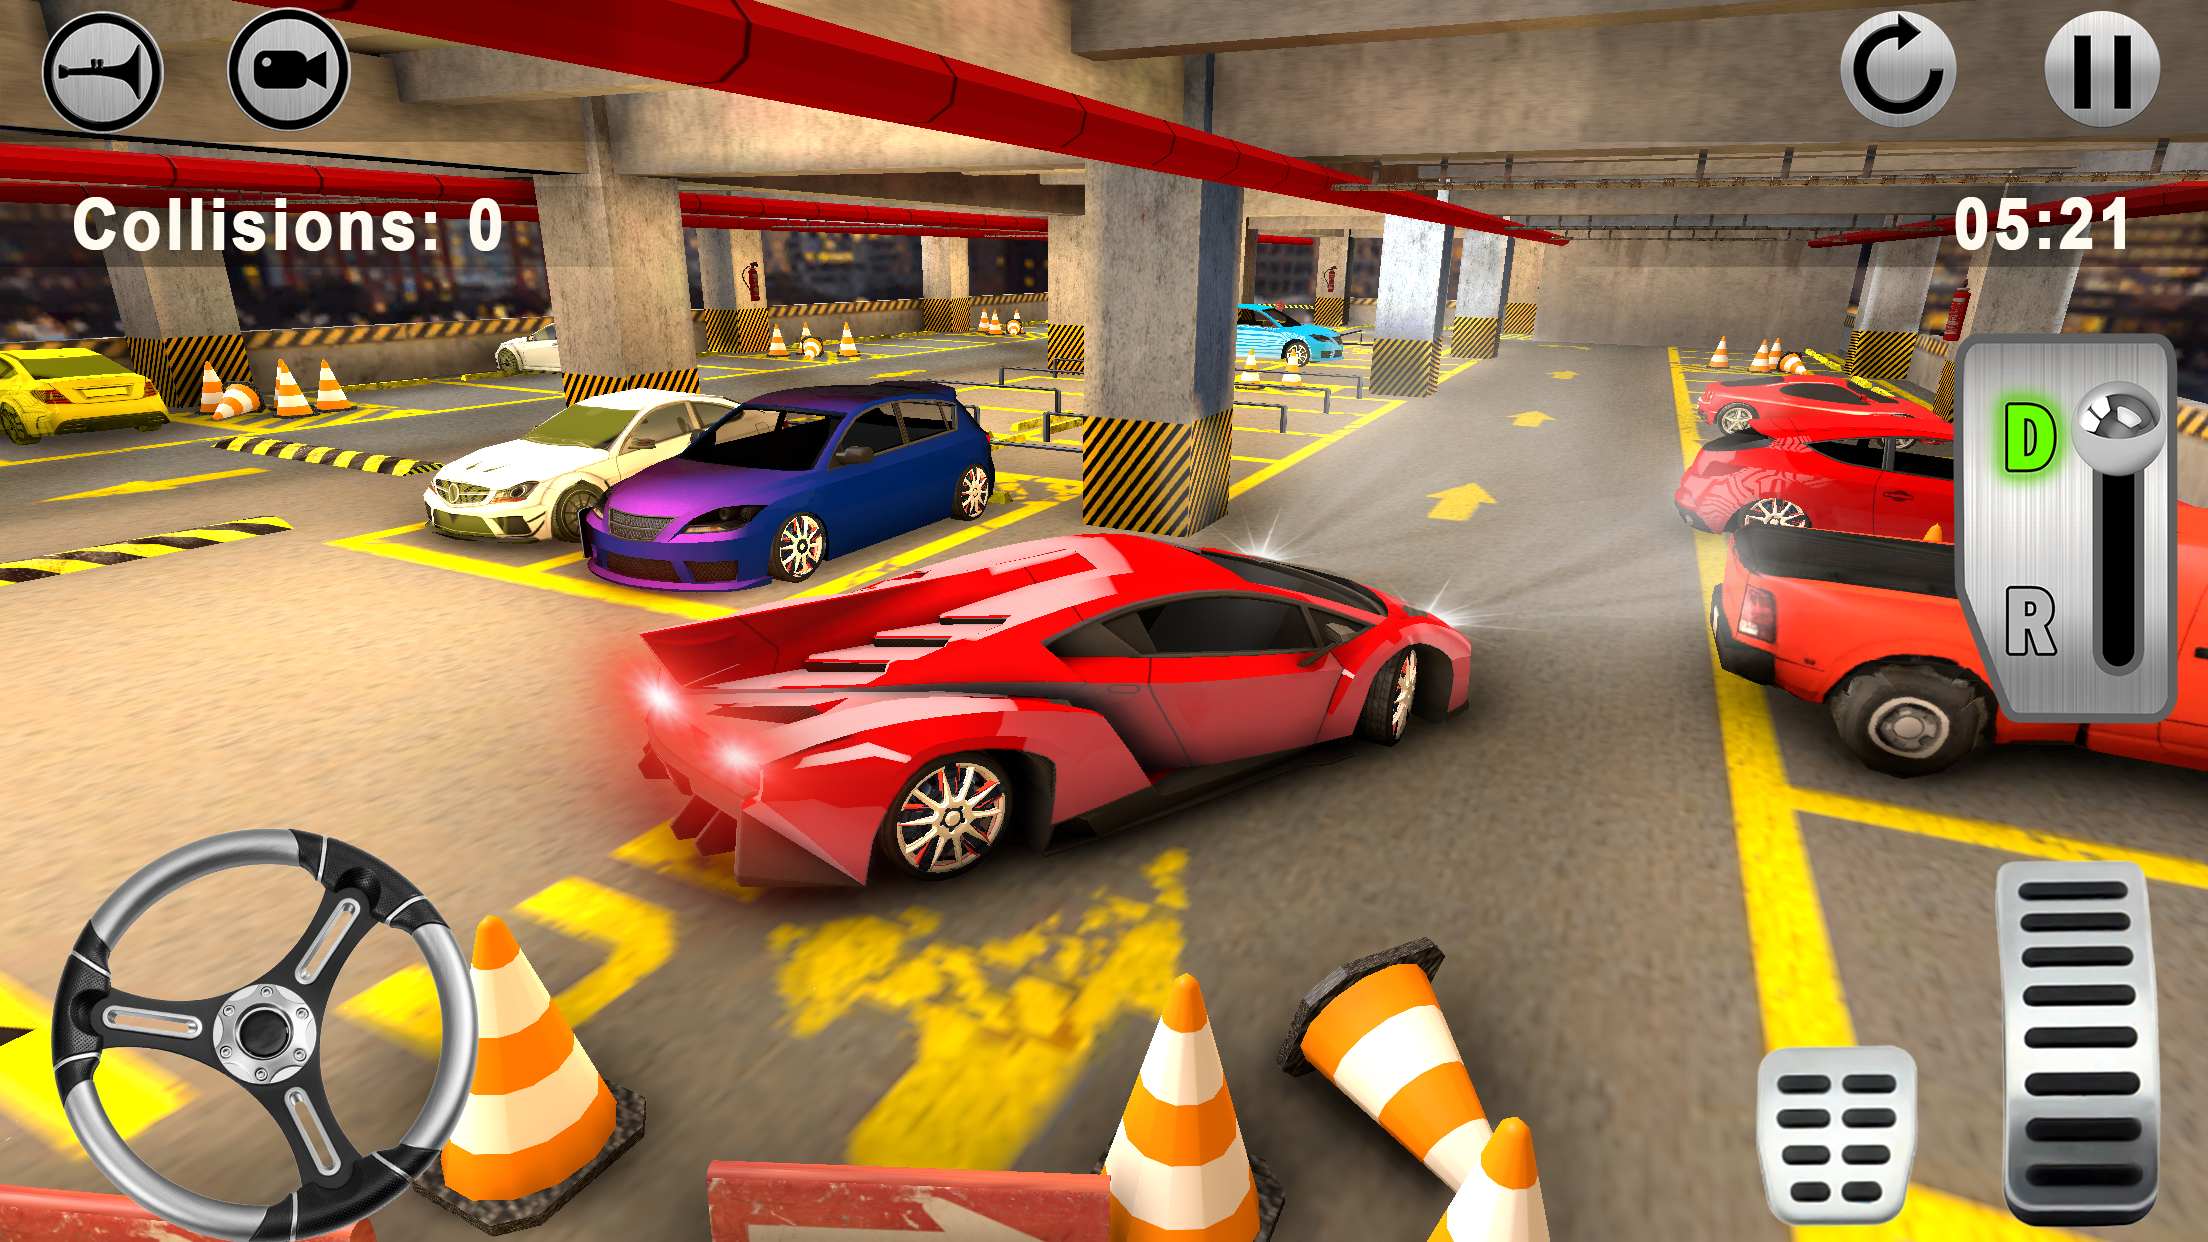 Screenshot 1 of Estacionamento - Jogo de Simulador 1